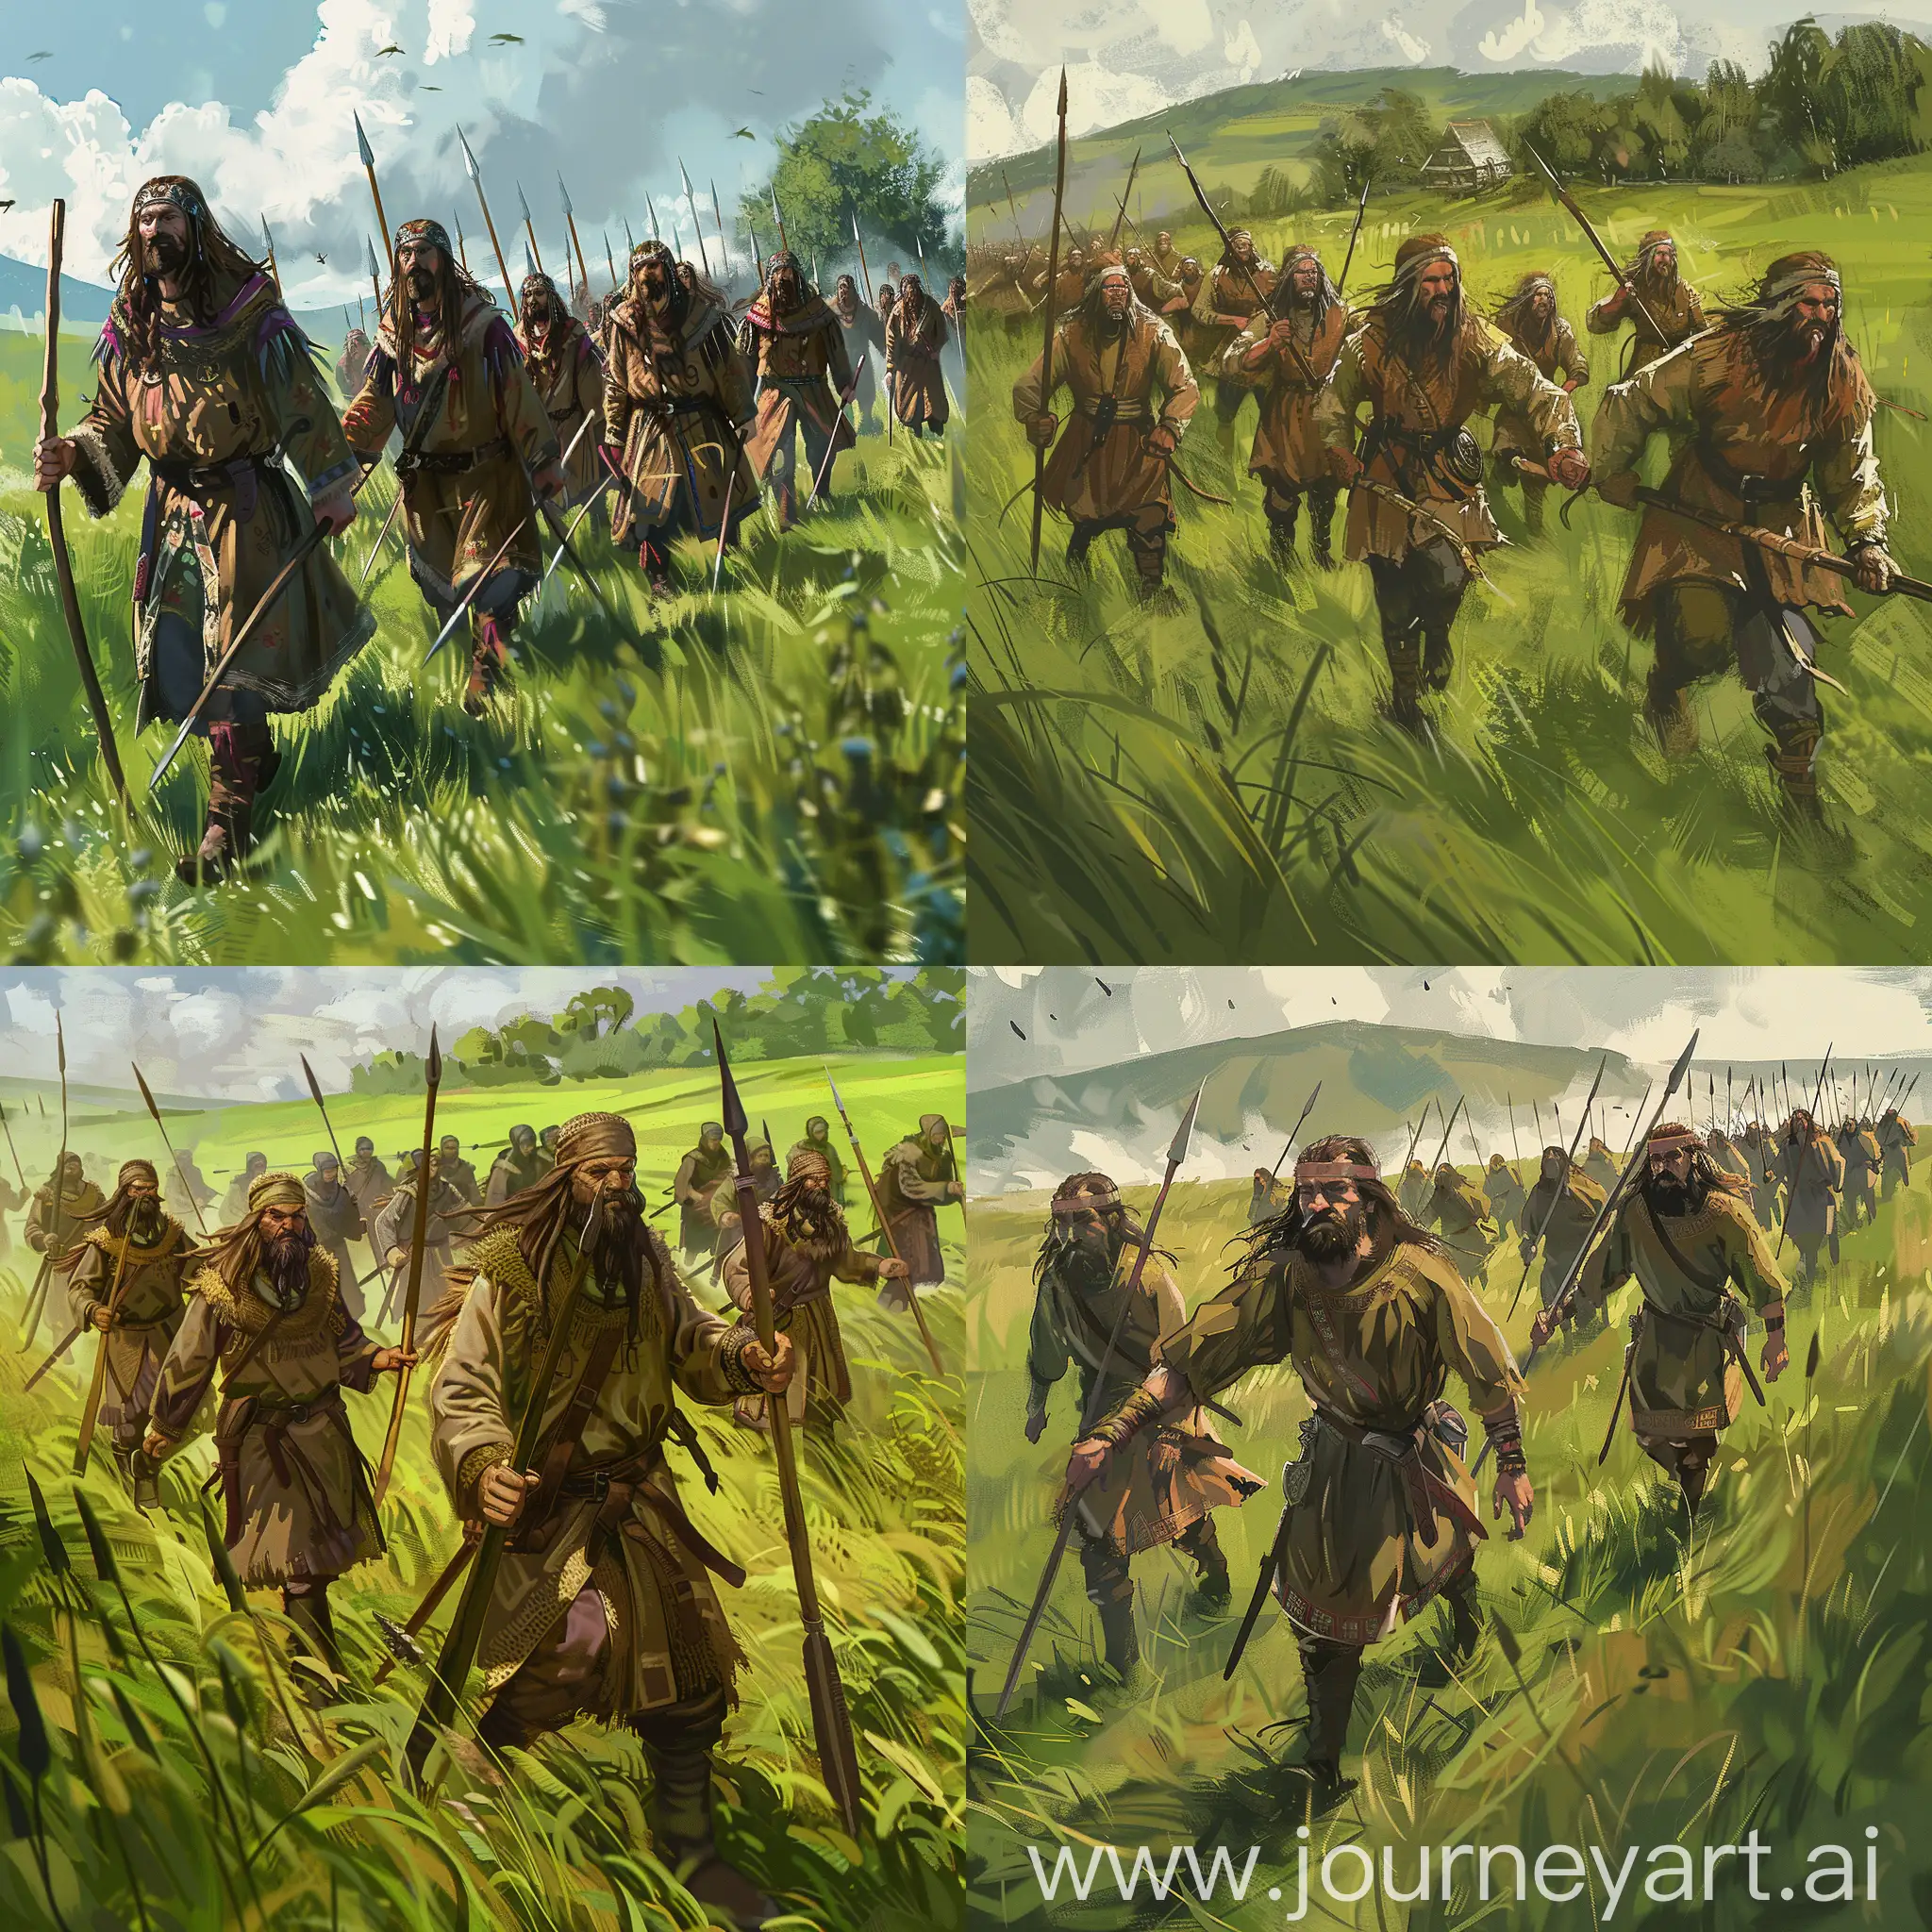 Нарисуй арт: отряд мужчин-крестьян в крестьянской одежде с длинными волосами и копьями в руках идет маршем через зеленое поле. Это в стиле изображений из игры Crusader kings 3.